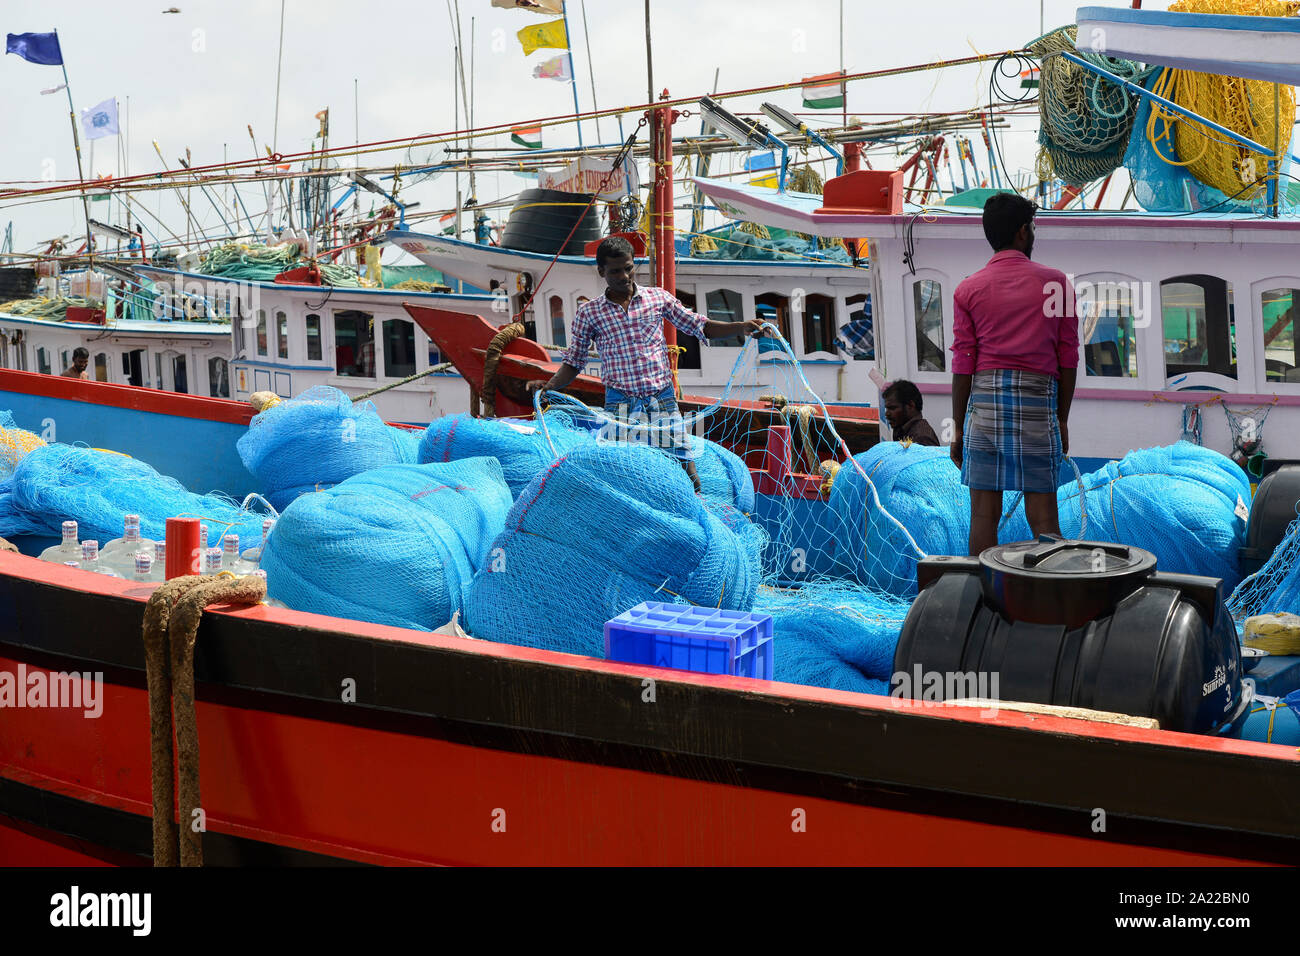 Indien, Karnataka, Mangaluru, ehemaliger Name Mangalore, Fischkutter im Hafen während des Monsuns, Kunststoff angeln Schleppnetze und Seile, sind eine wichtige Quelle für Kunststoff Verschmutzung der Ozeane und gefährlich für Meerestiere Stockfoto